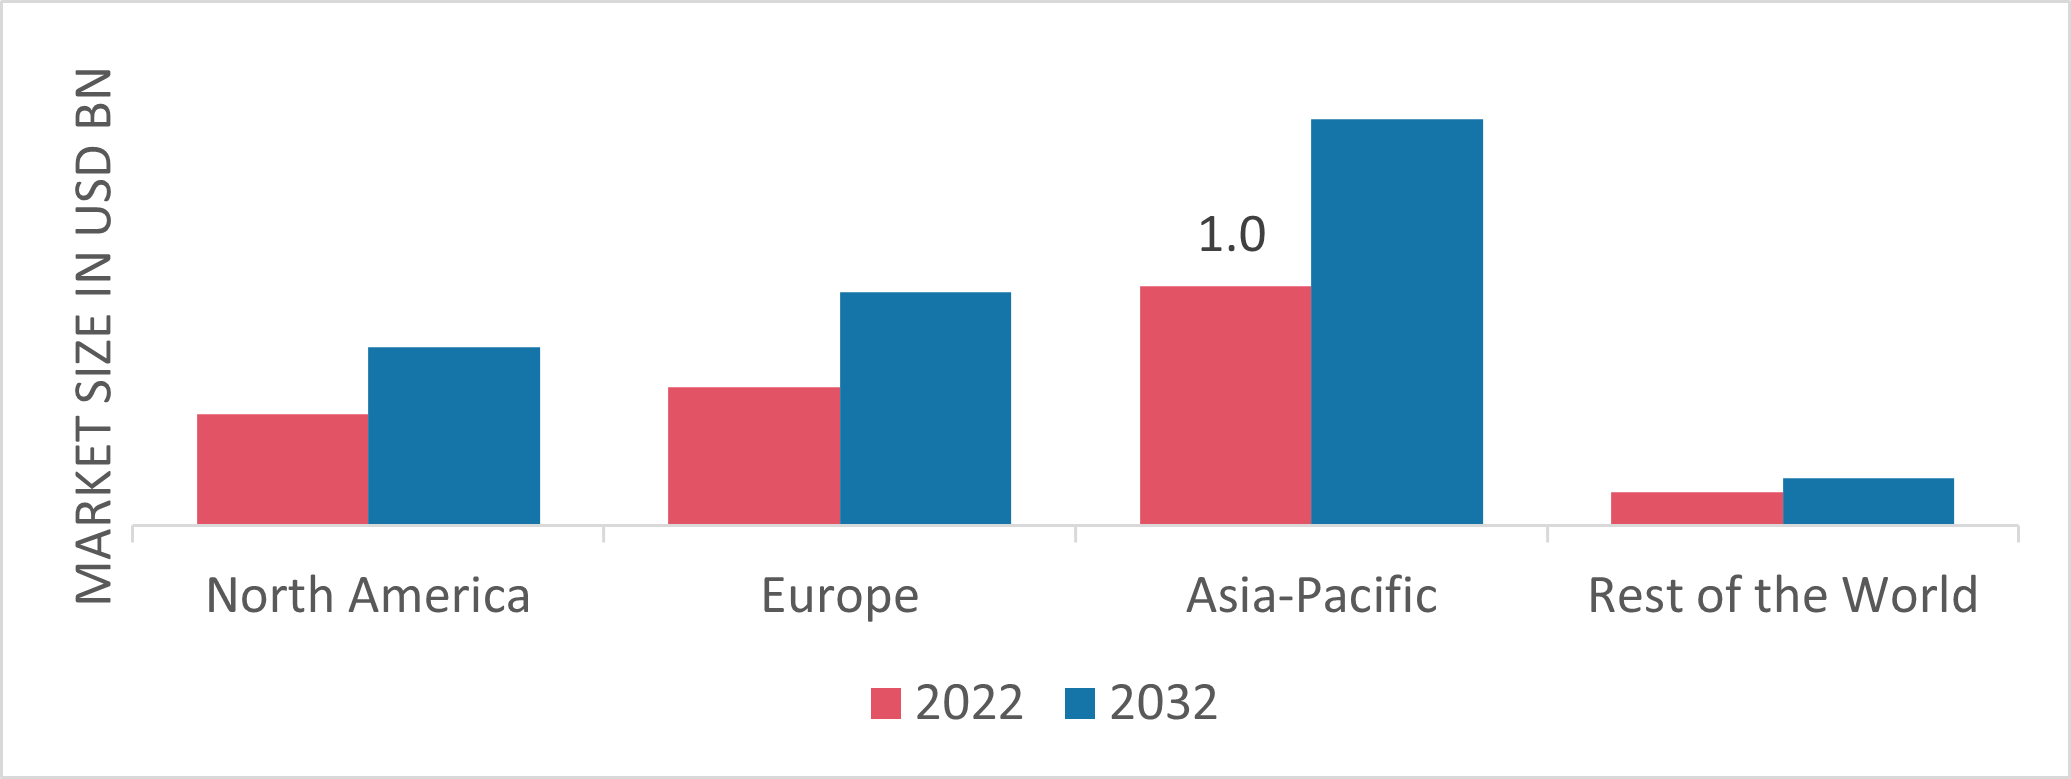 Figure 2: Virtual Pipelines Market Share by Region 2022 (USD Billion)